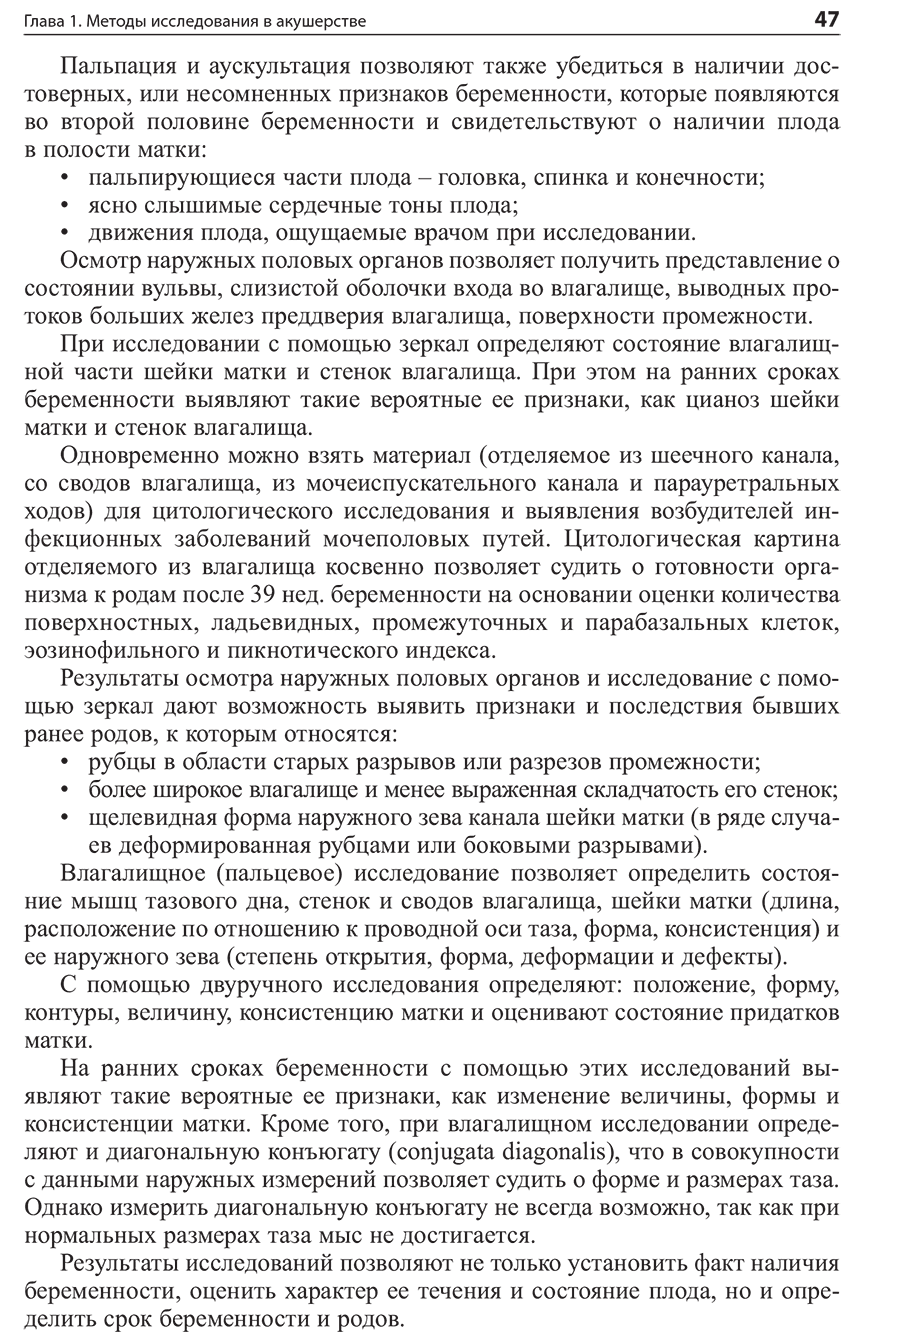 Пример страницы из книги "Амбулаторно-поликлиническая помощь в акушерстве и гинекологии" - Сидорова И. С.